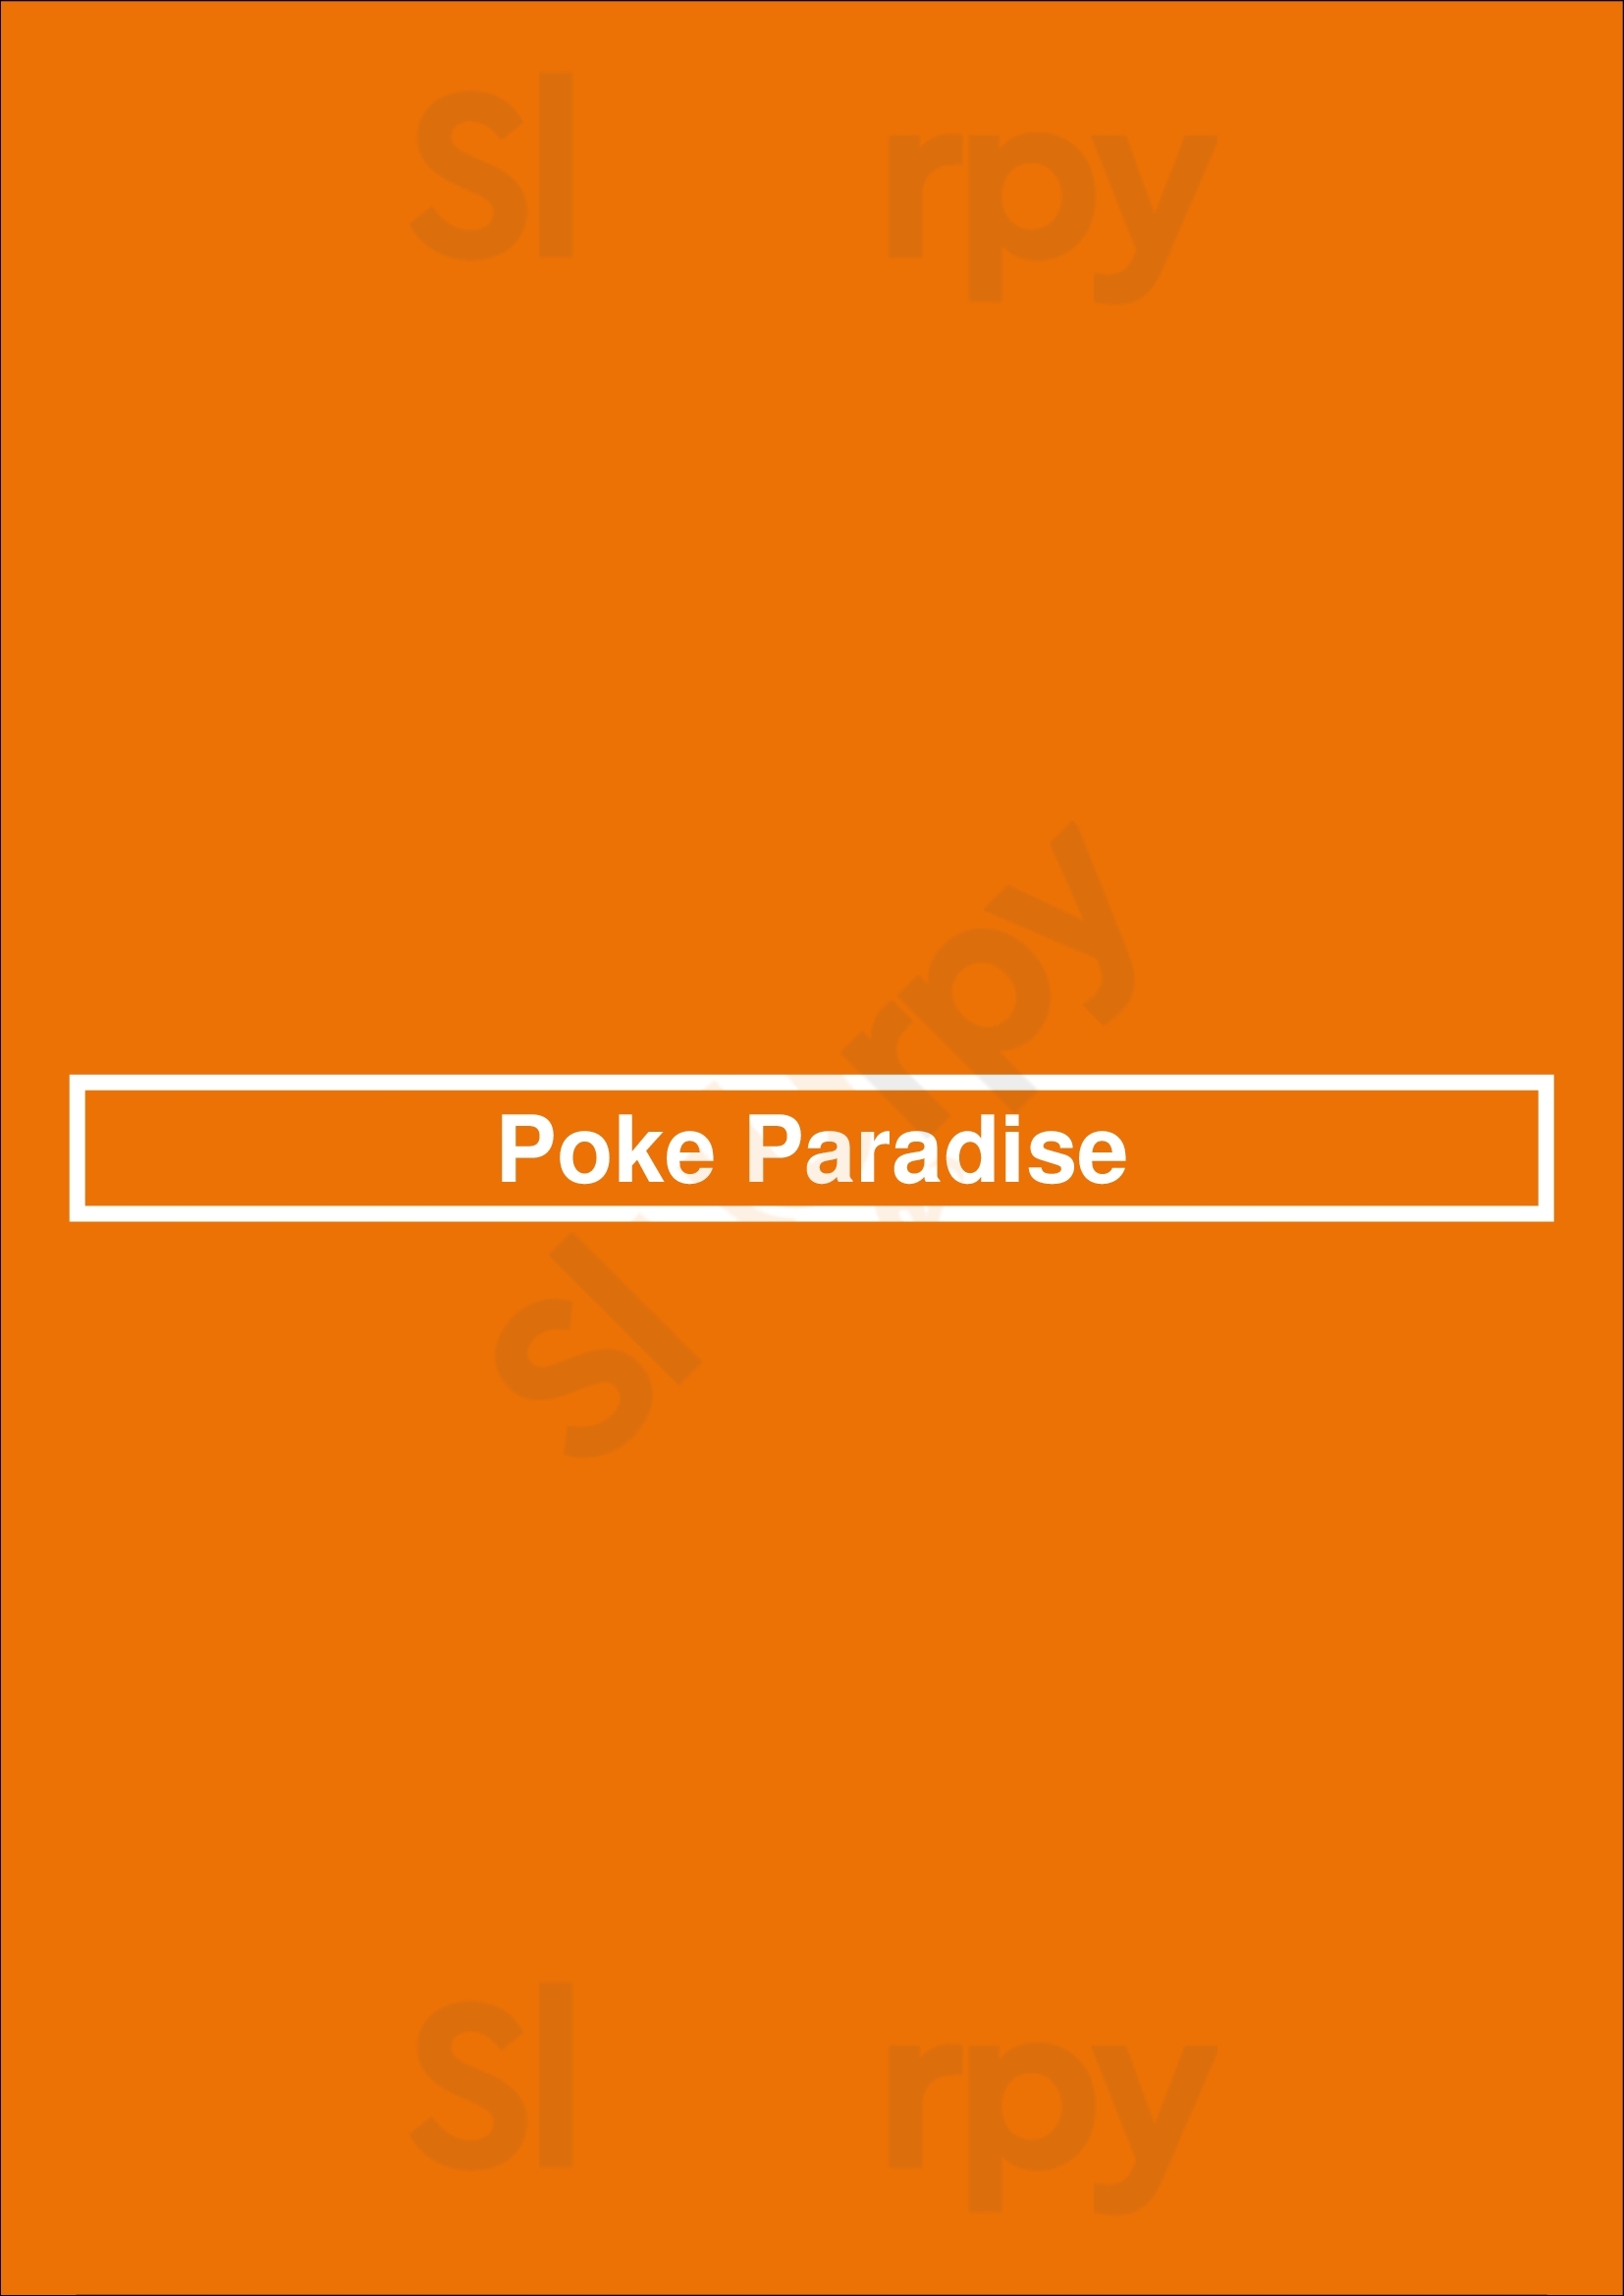 Poke Paradise San Jose Menu - 1